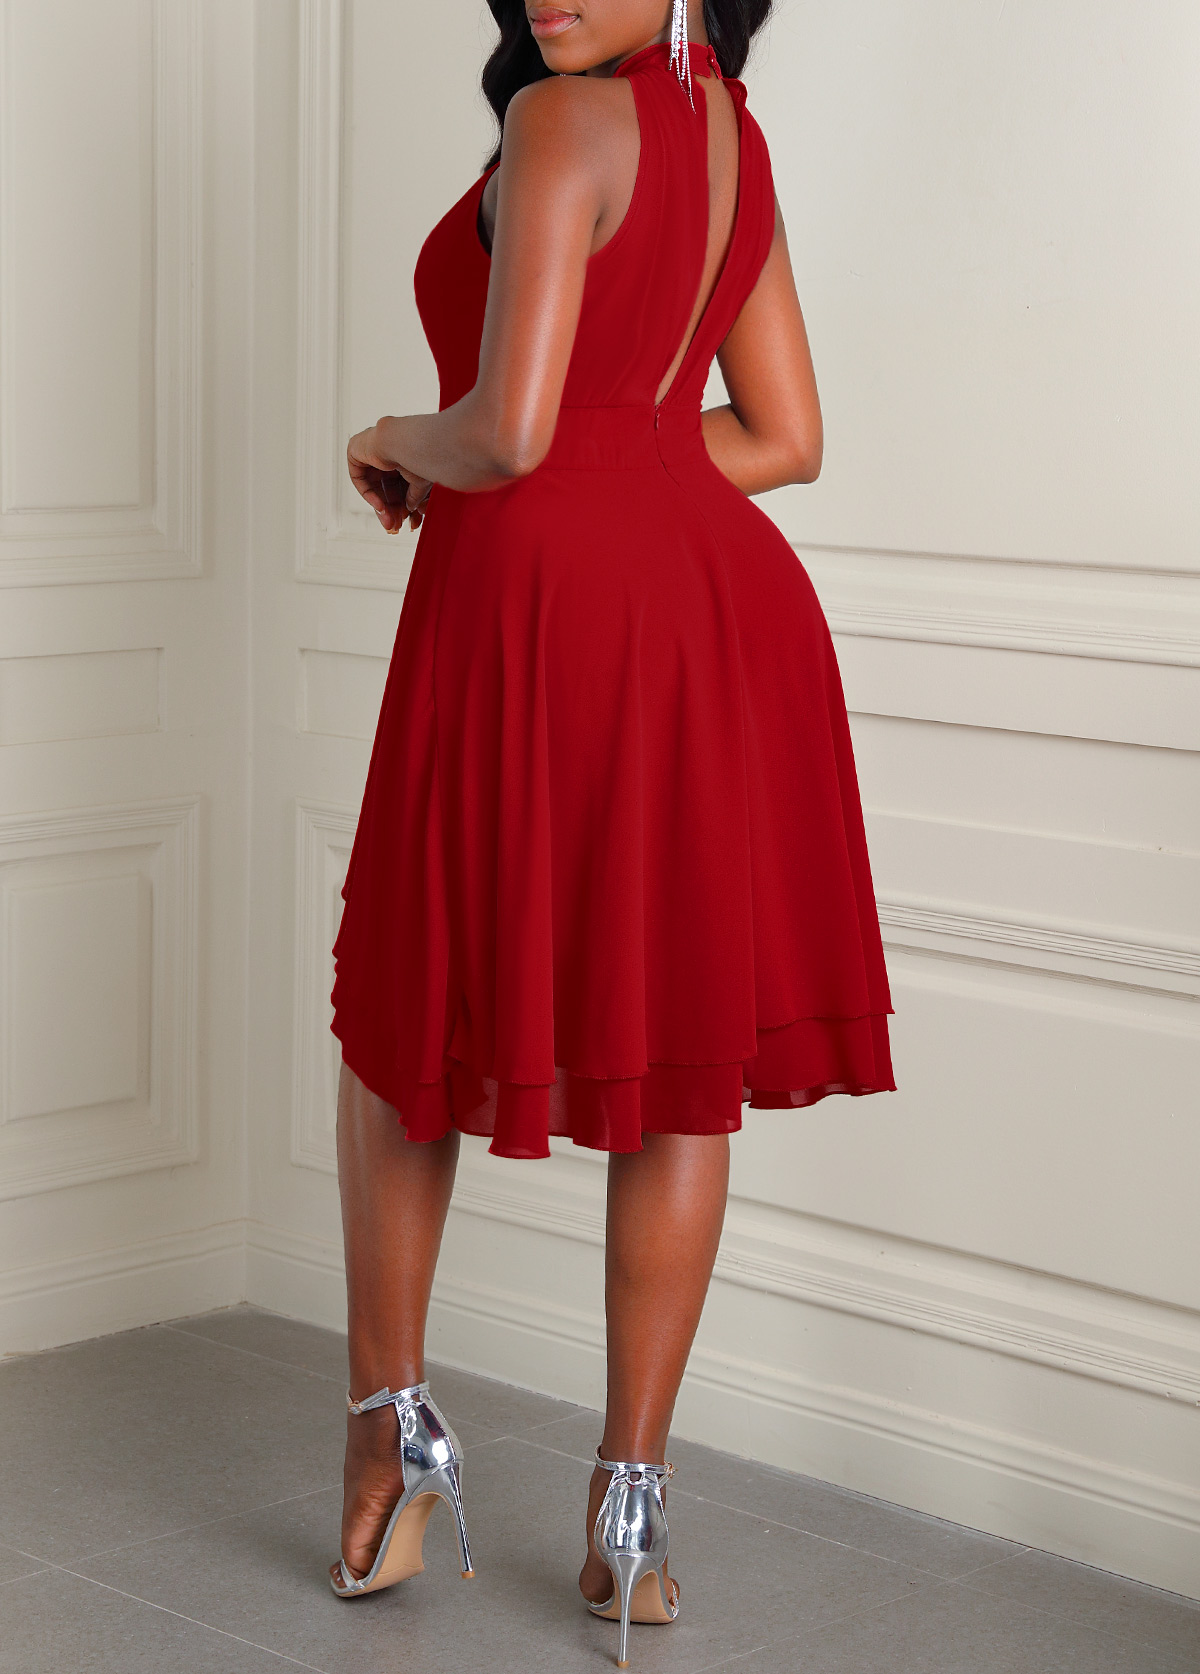 Layered Hem Wine Red Sleeveless Dress